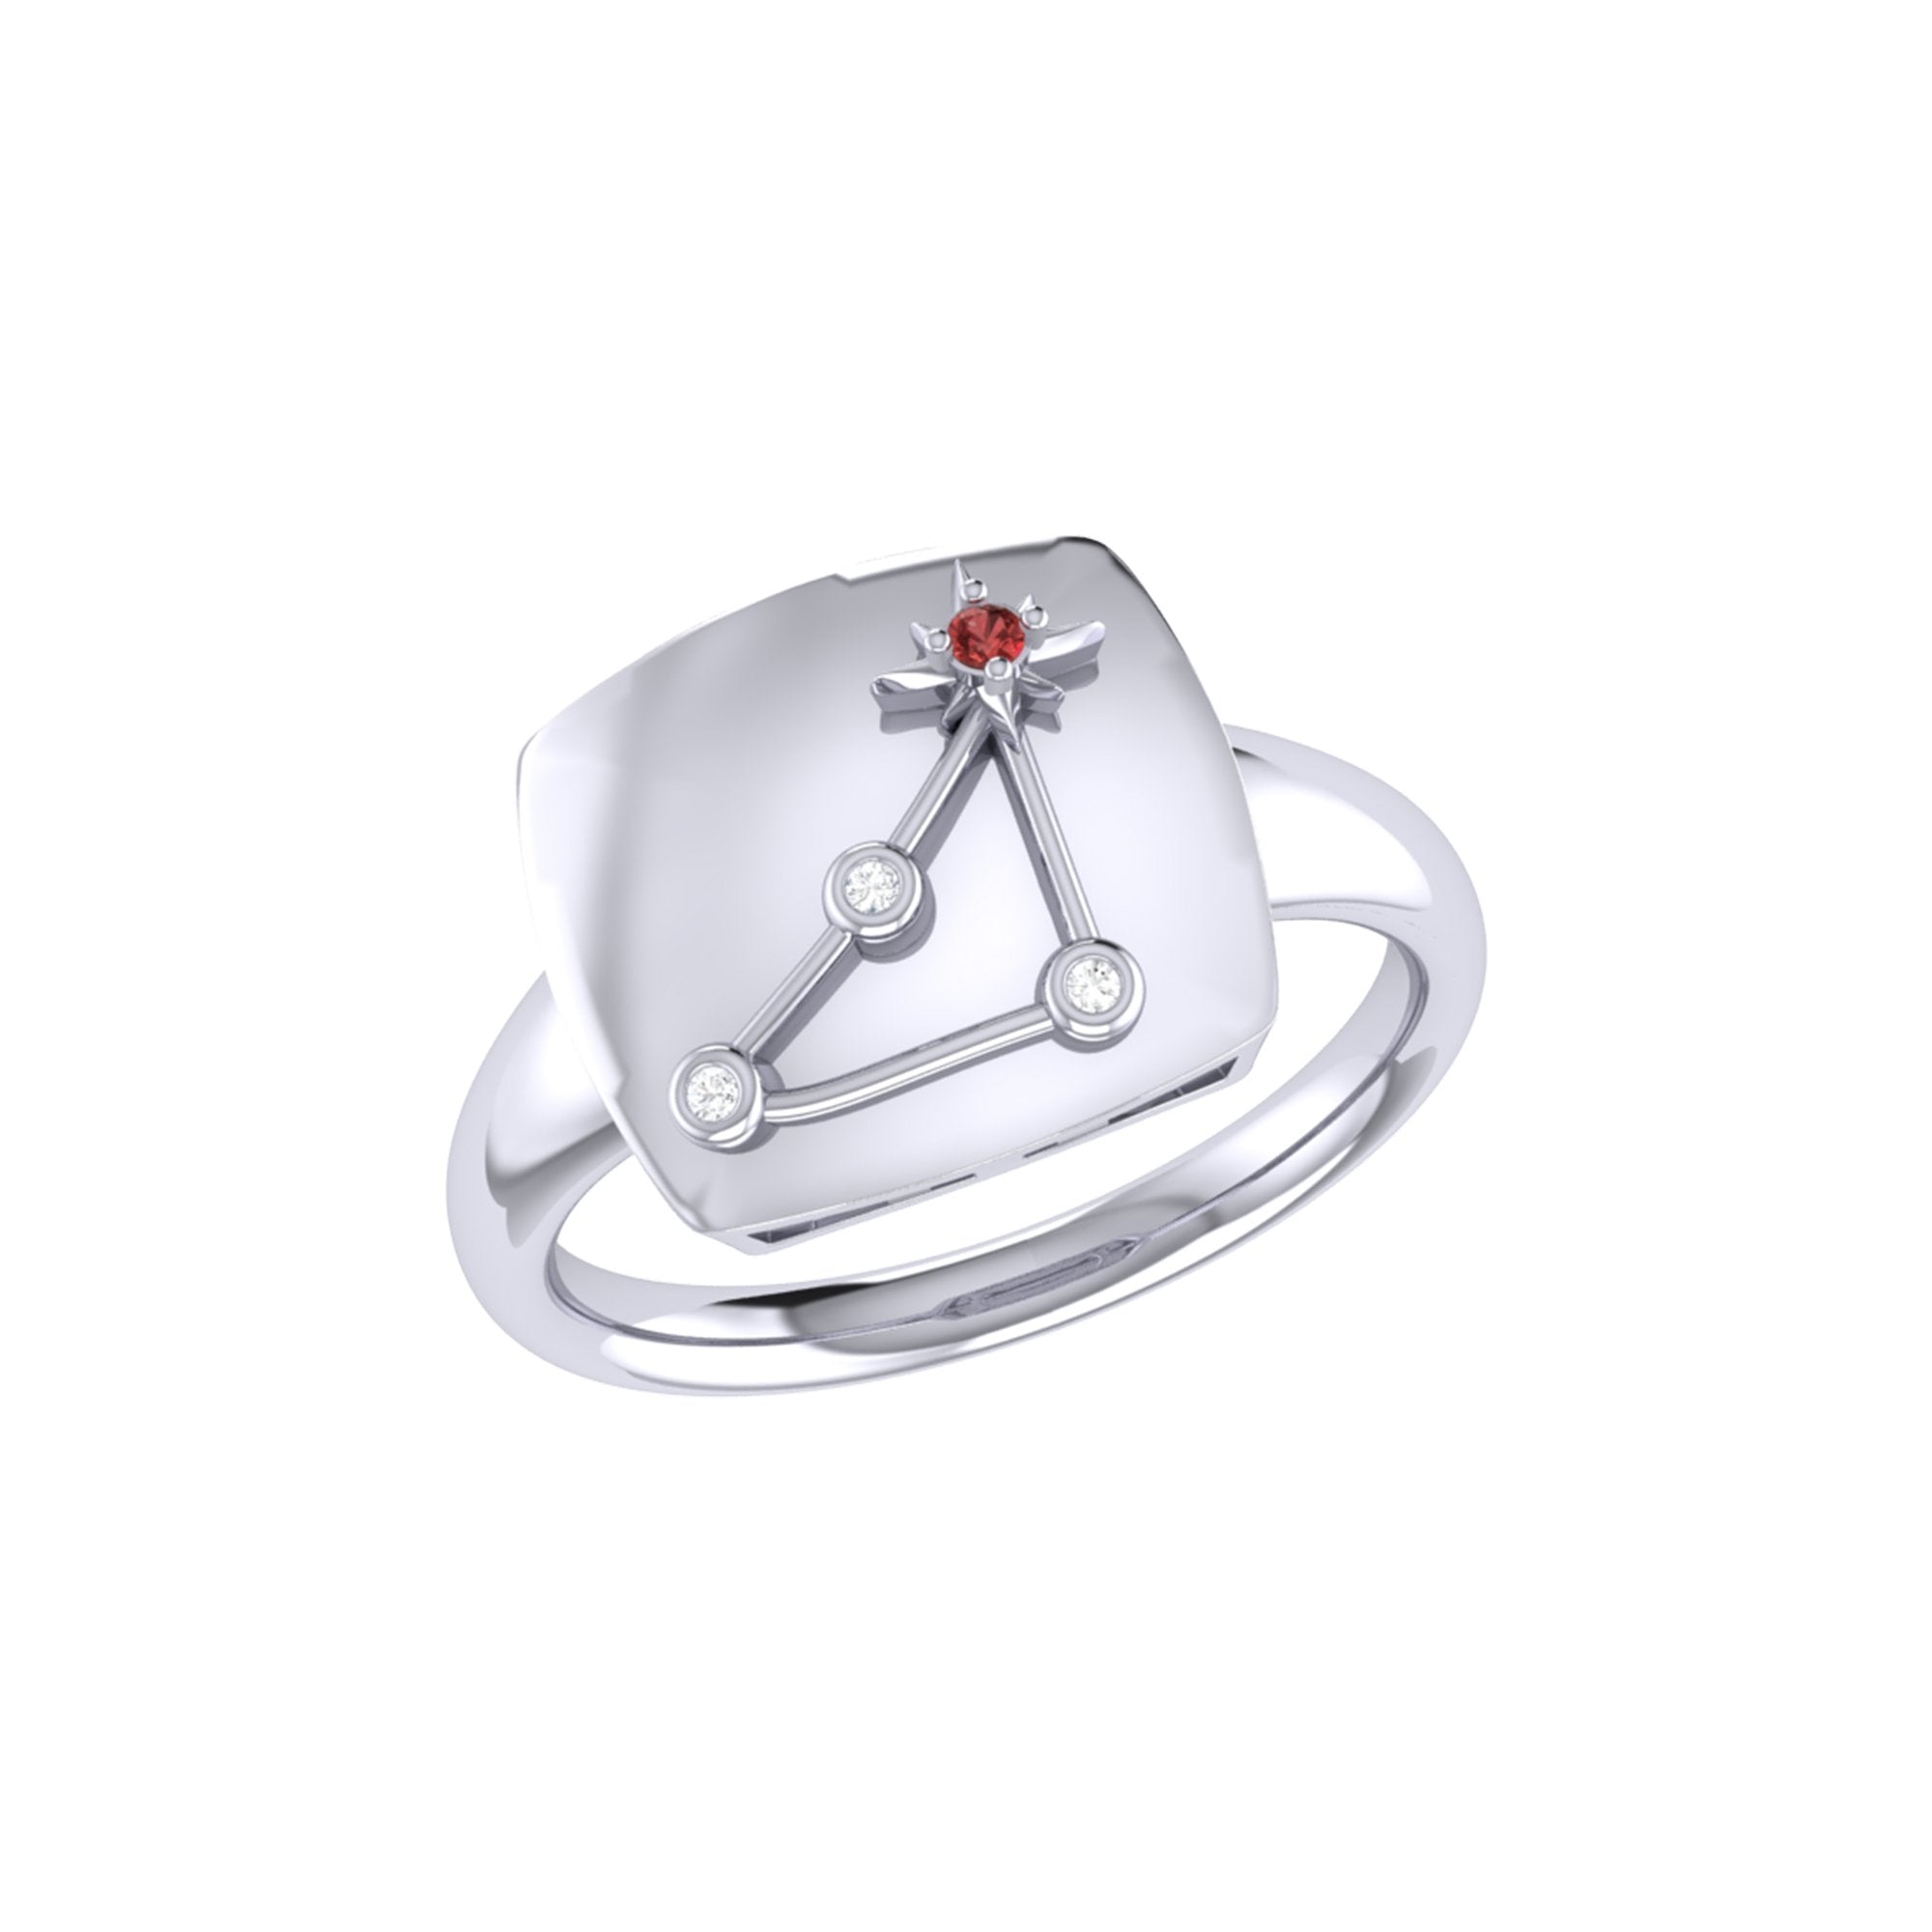 Capricorn Goat Garnet & Diamond Constellation Signet Ring in 14K White Gold